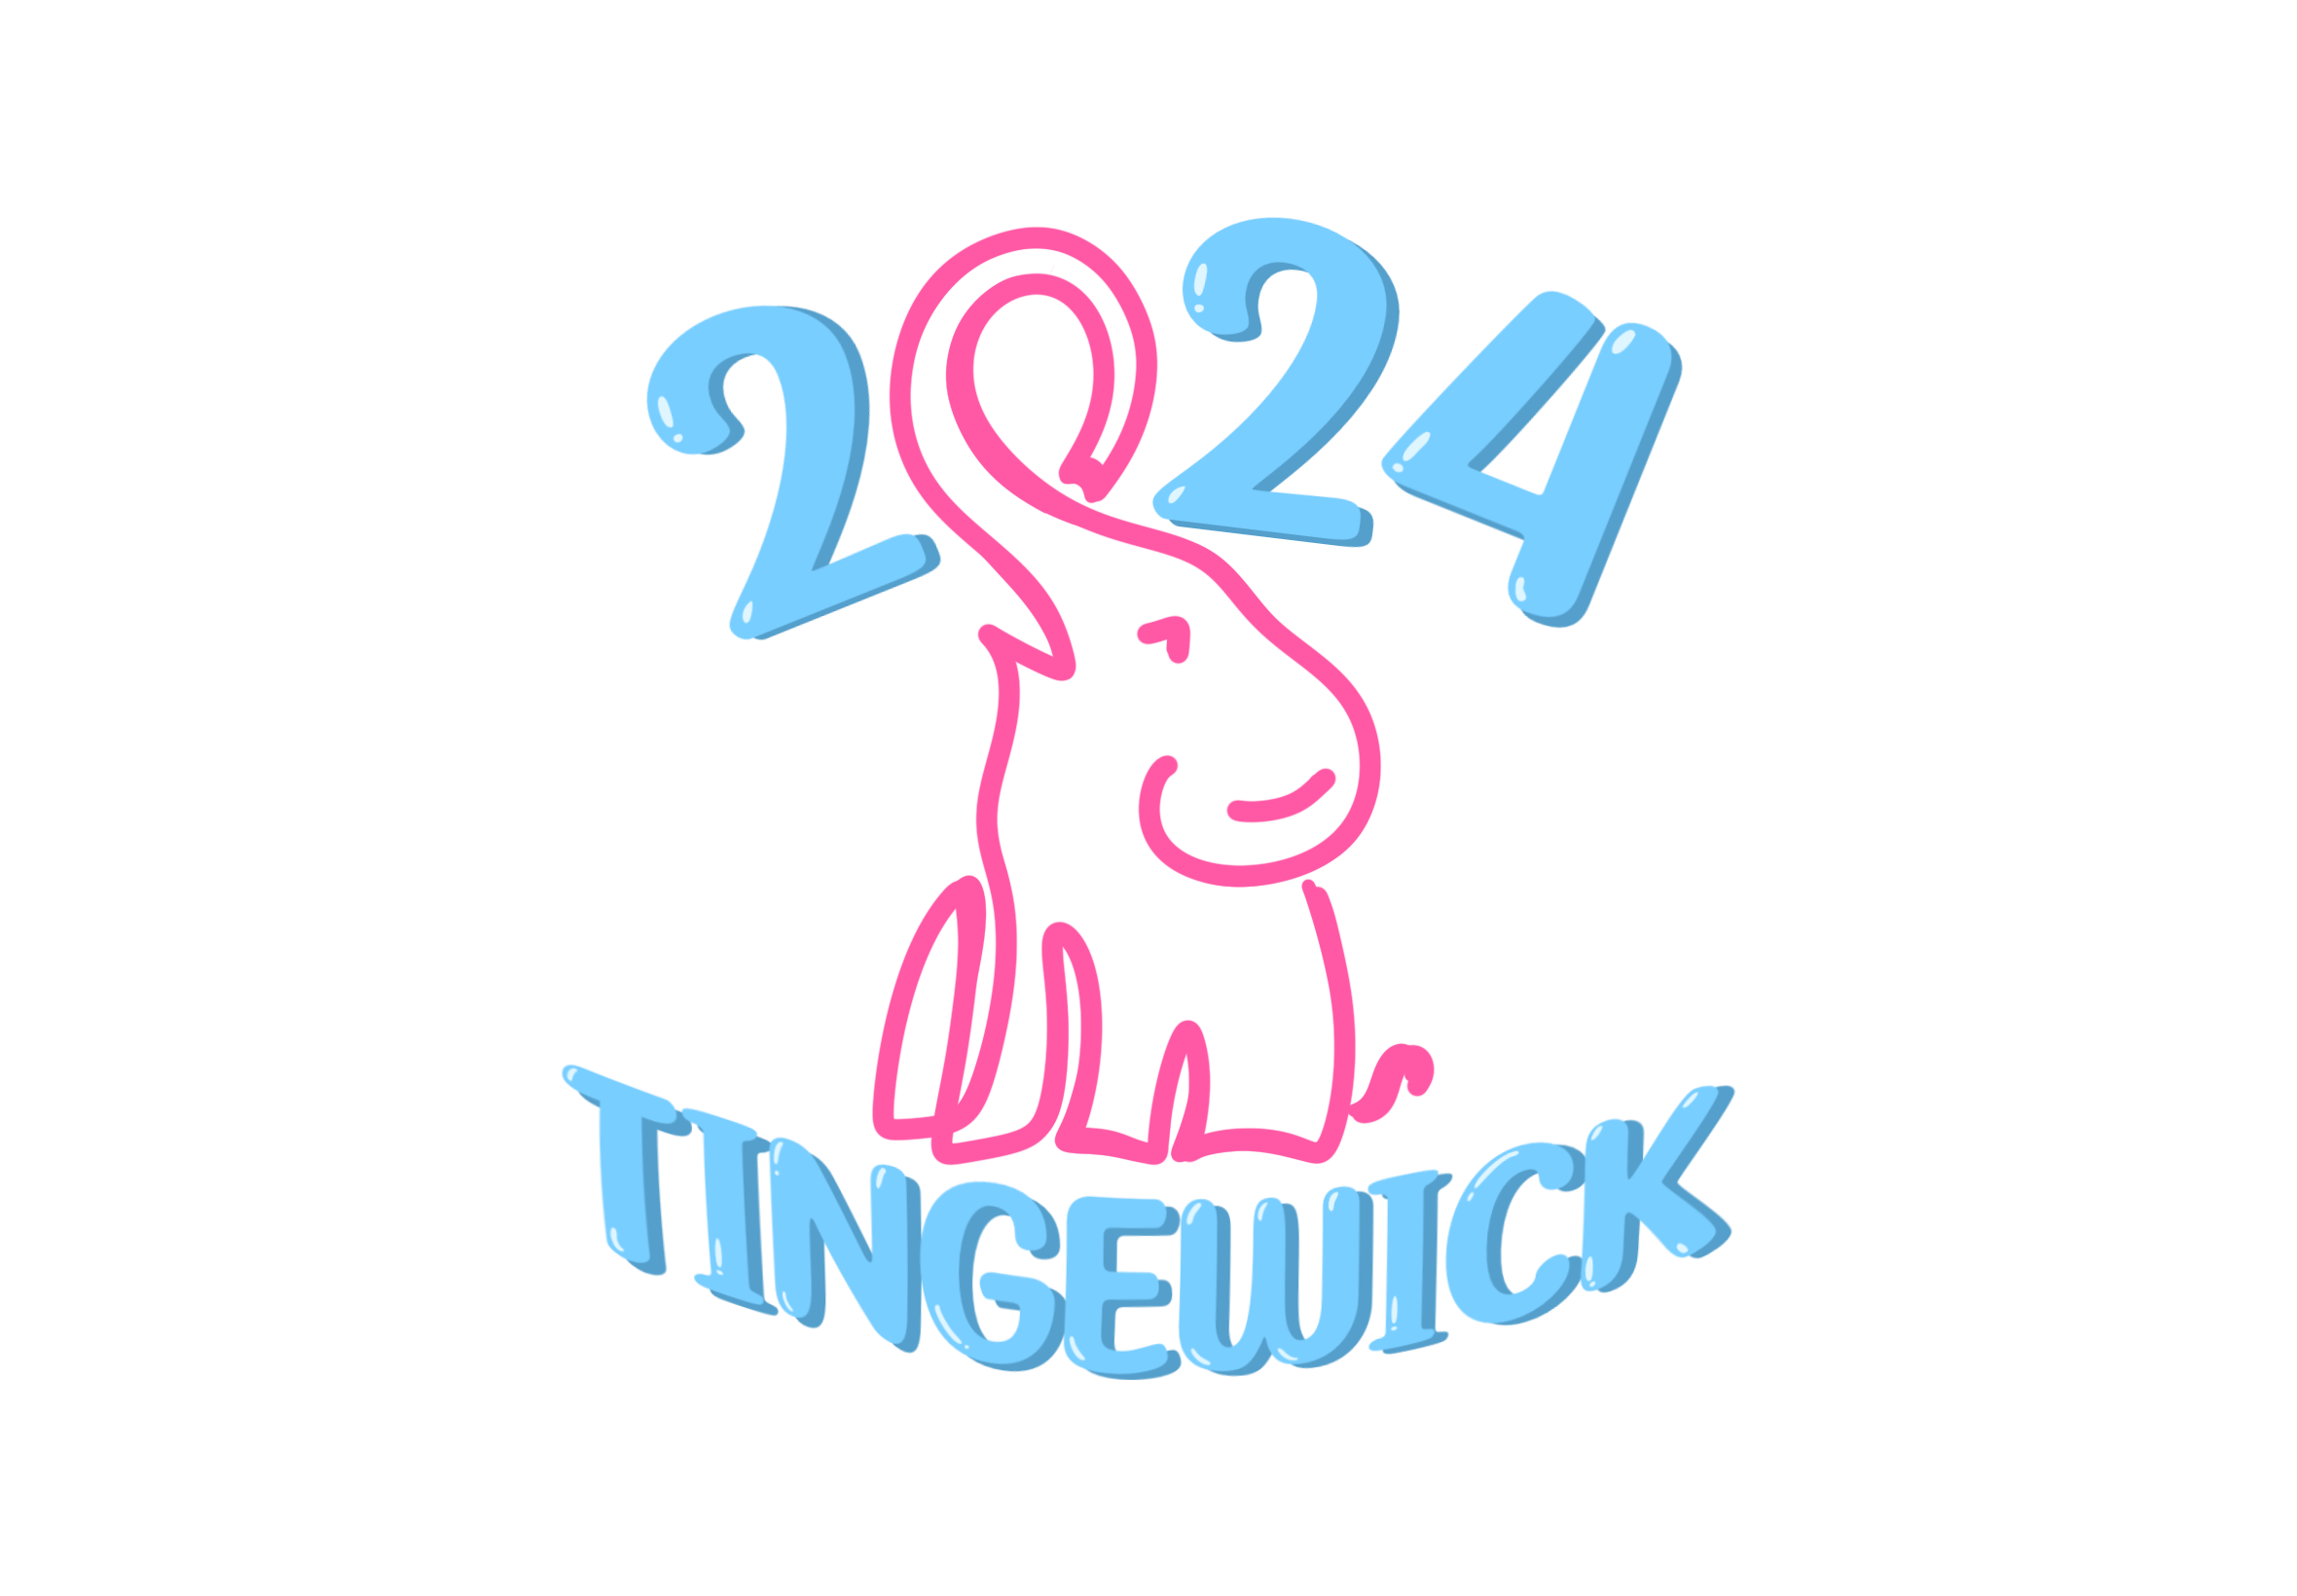 Tingewick Logo